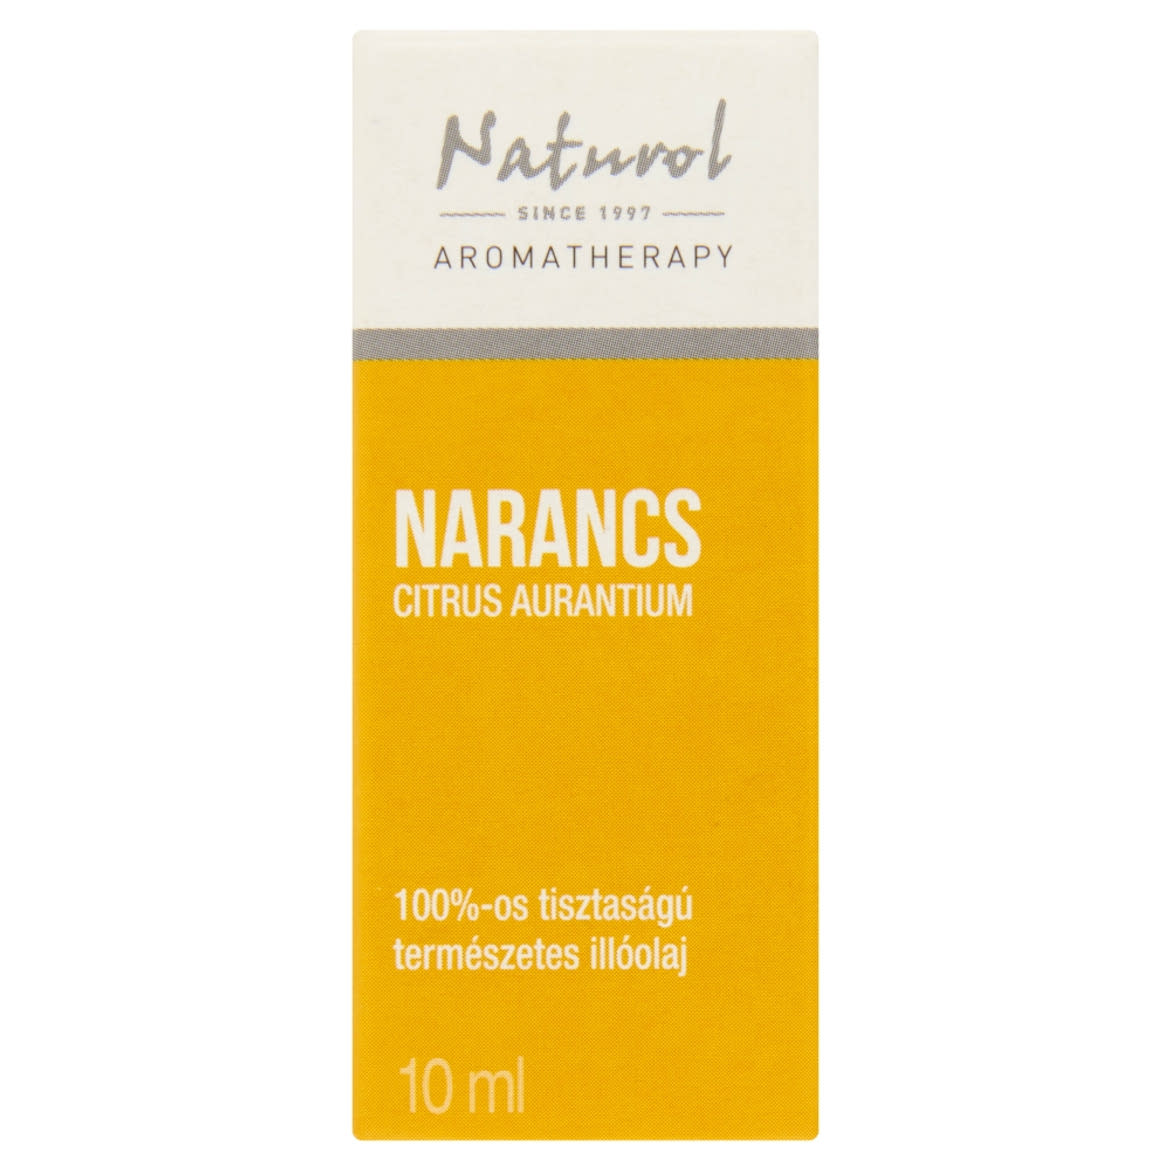 Naturol Aromatherapy 100%-os tisztaságú természetes narancs illóolaj